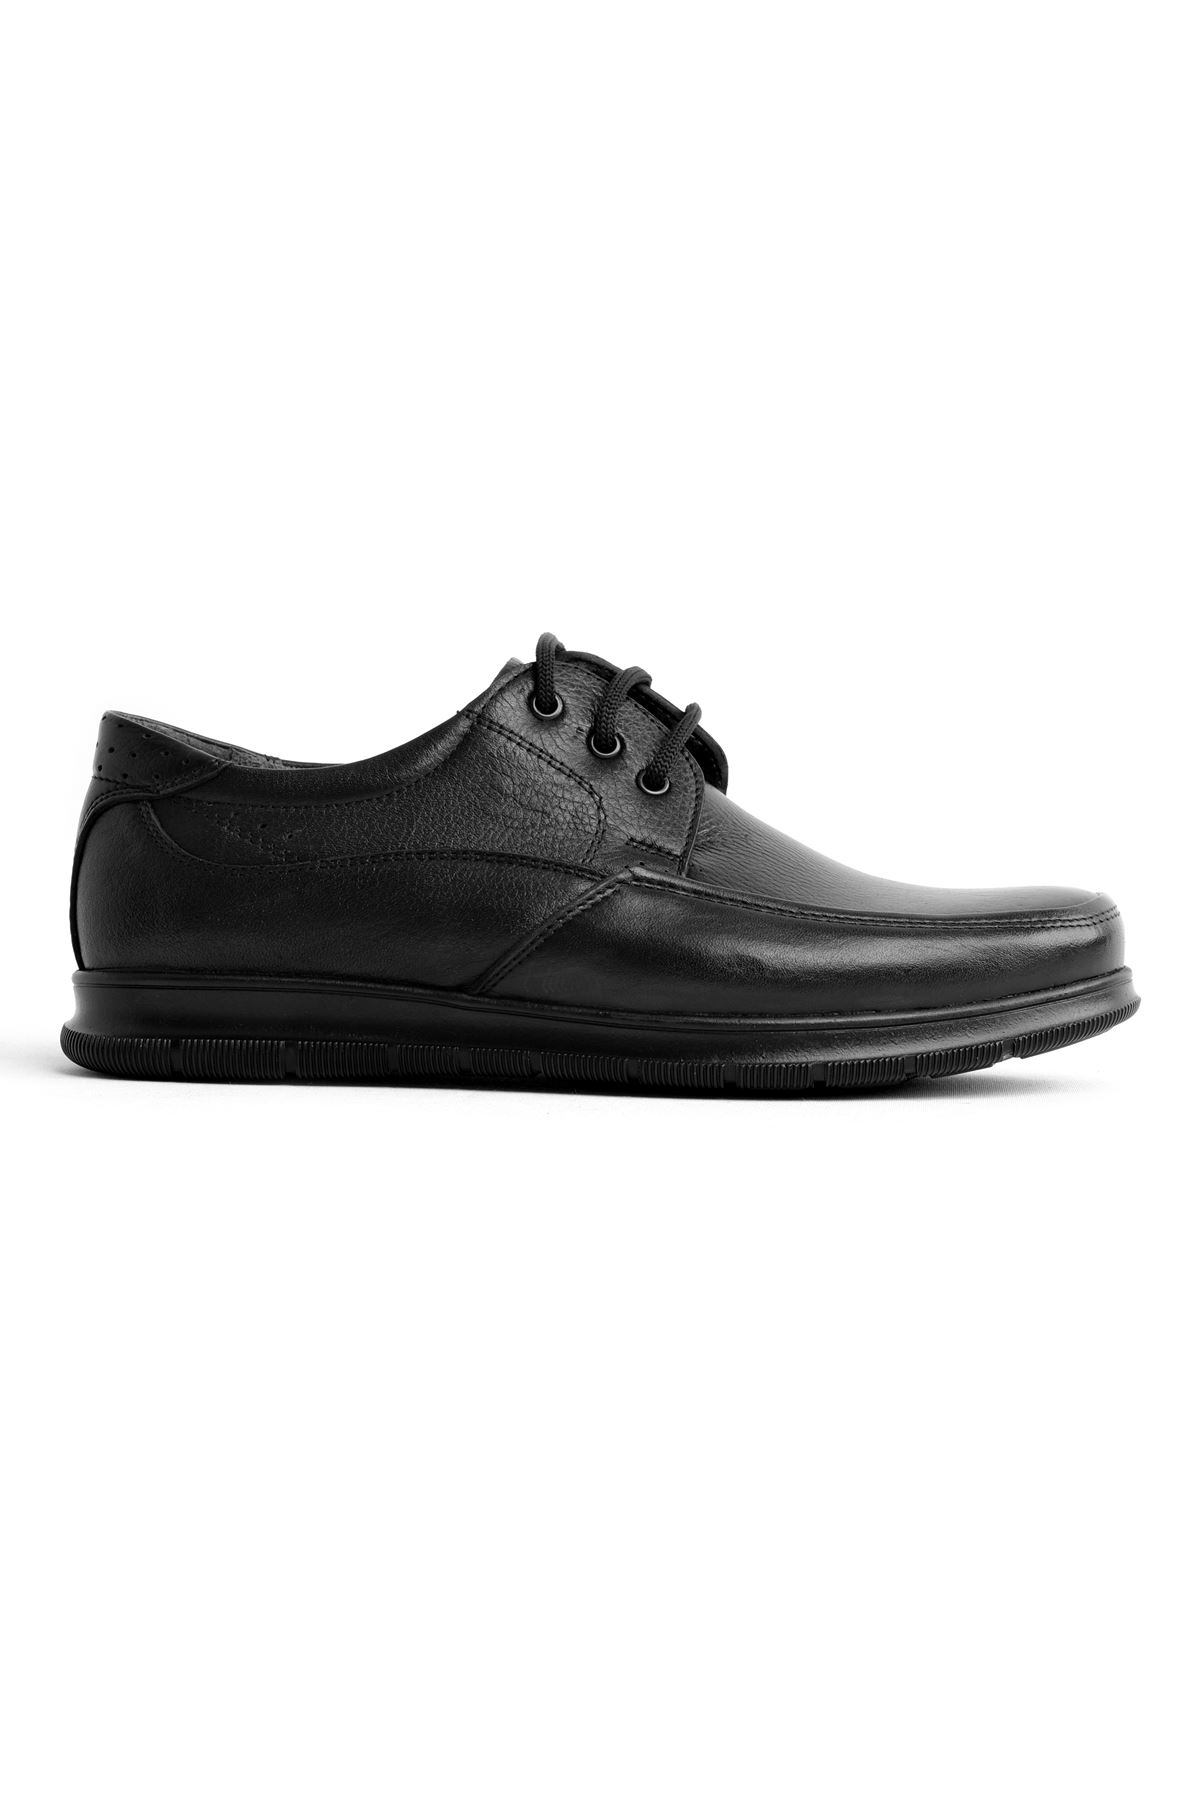 Tegan Erkek Hakiki Deri Klasik Ayakkabı-siyah